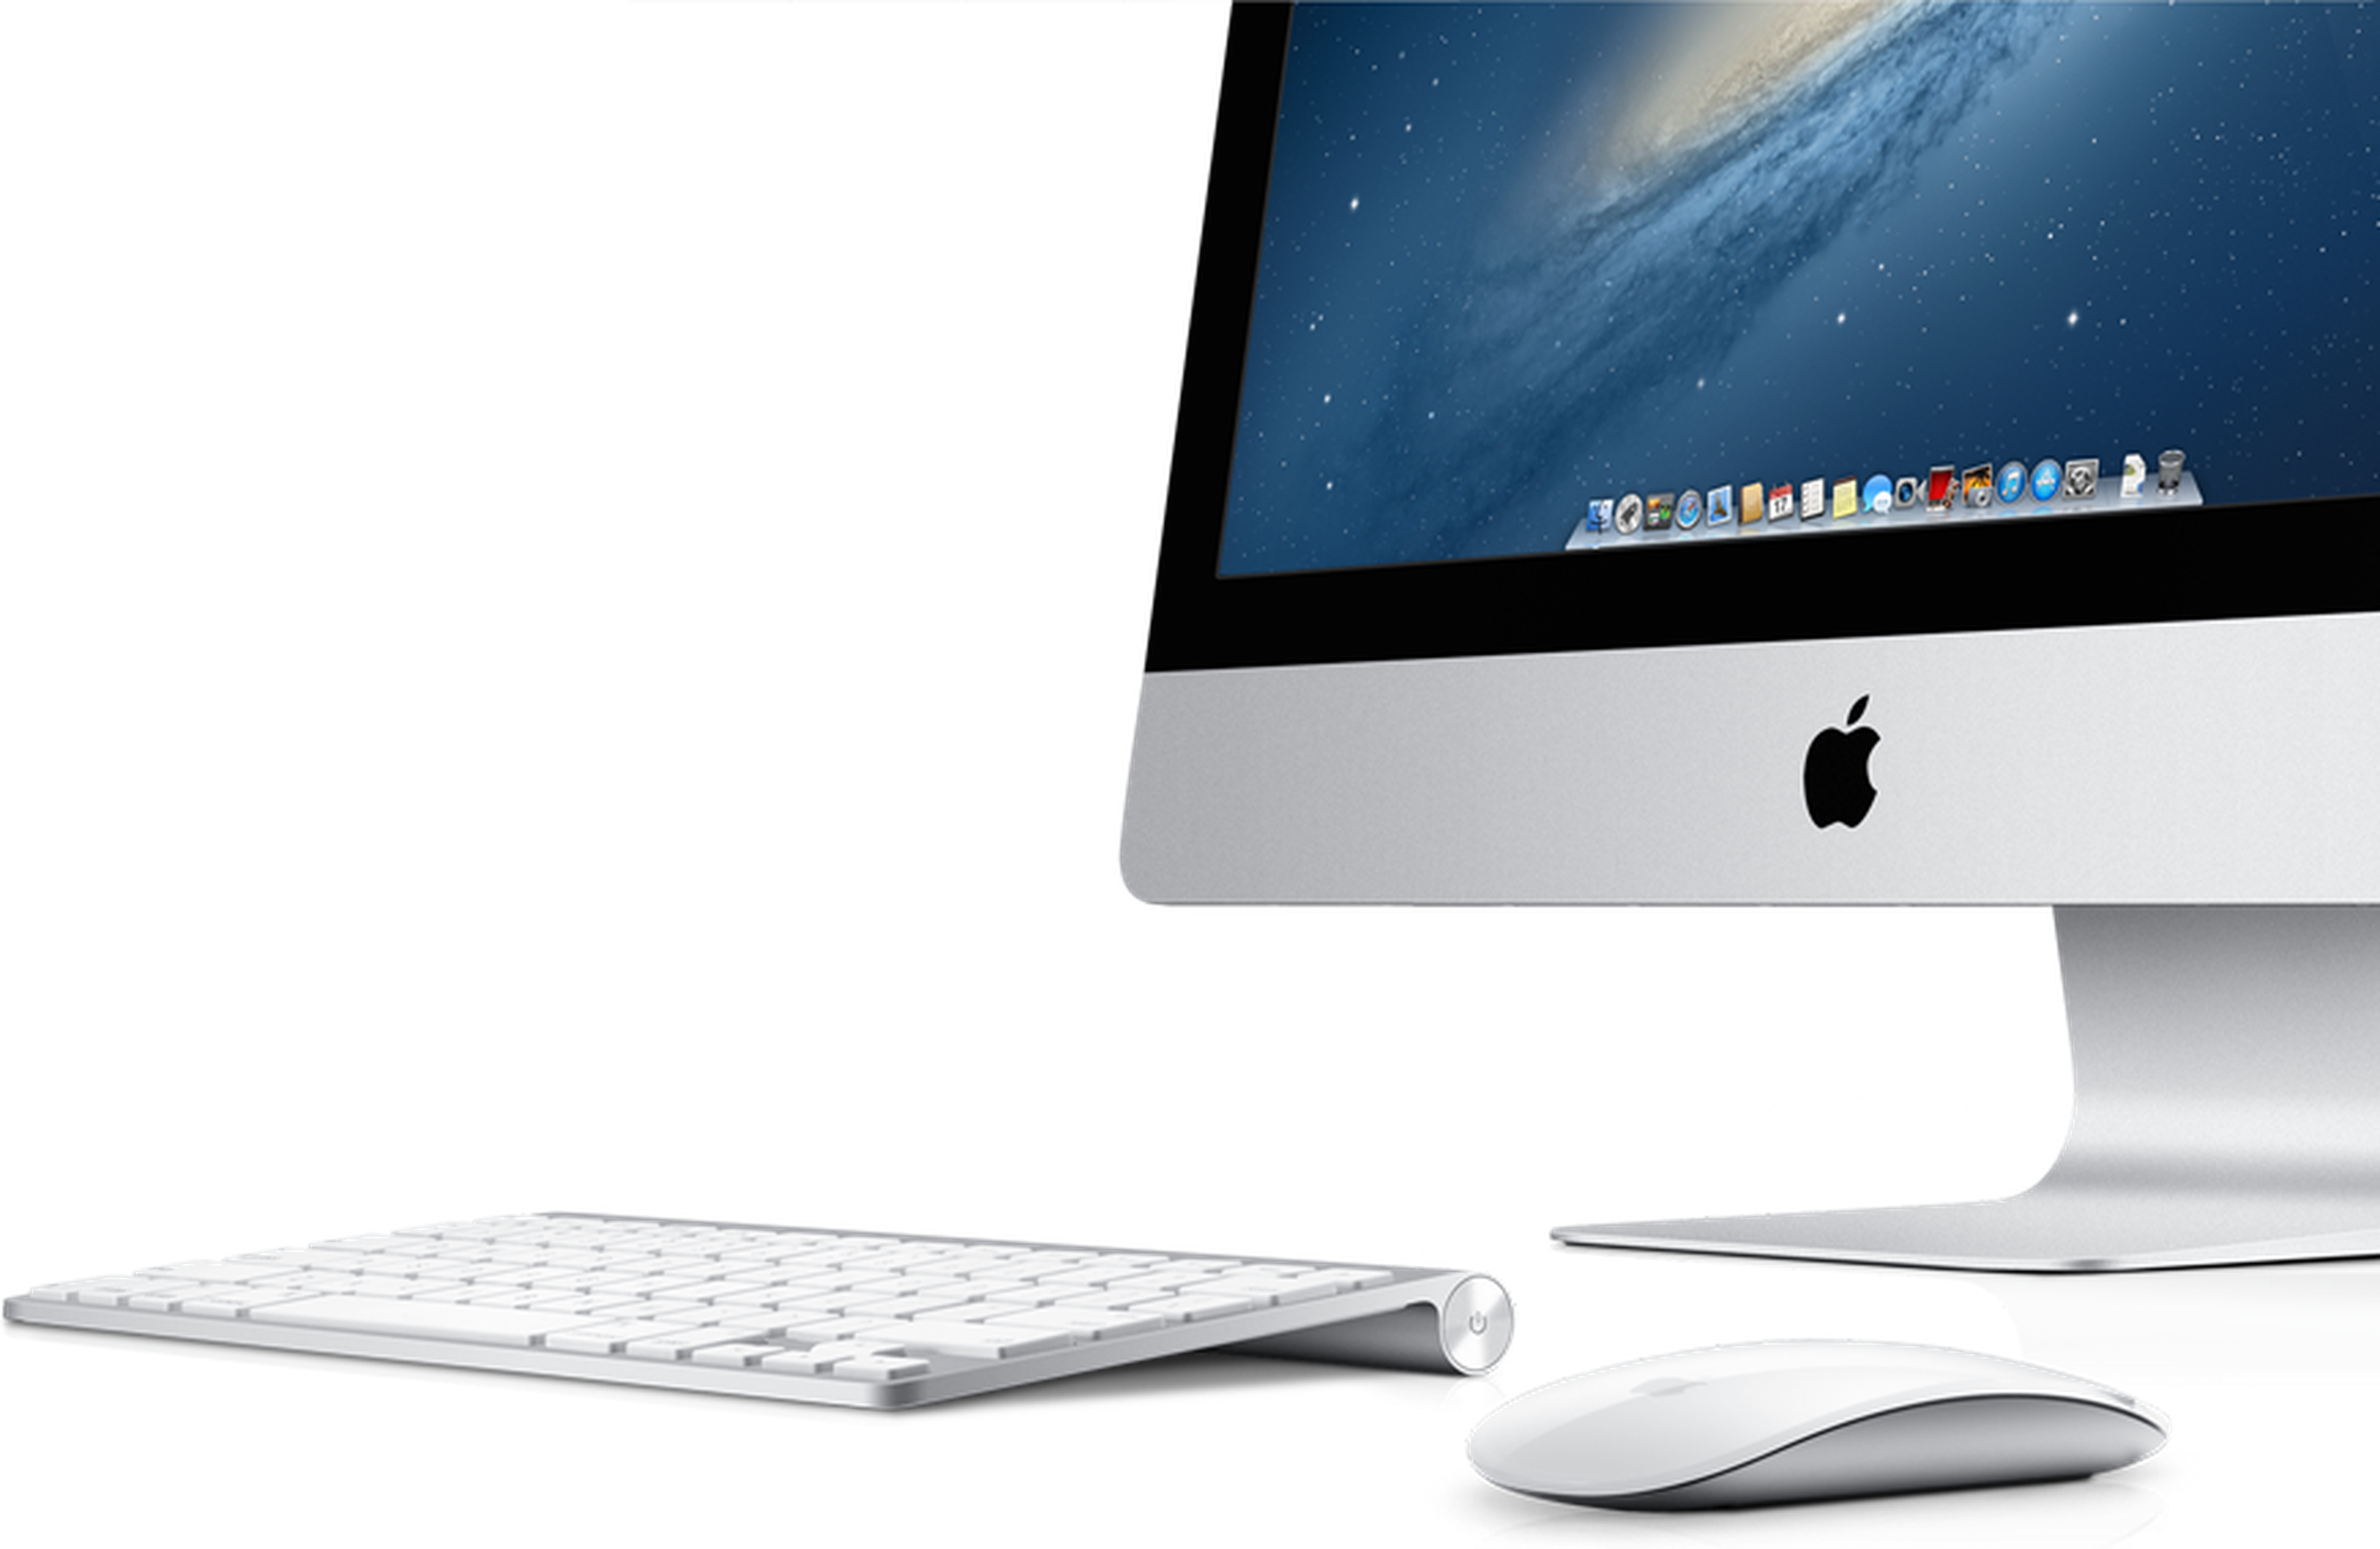 Posible nuevo procesador para iMac